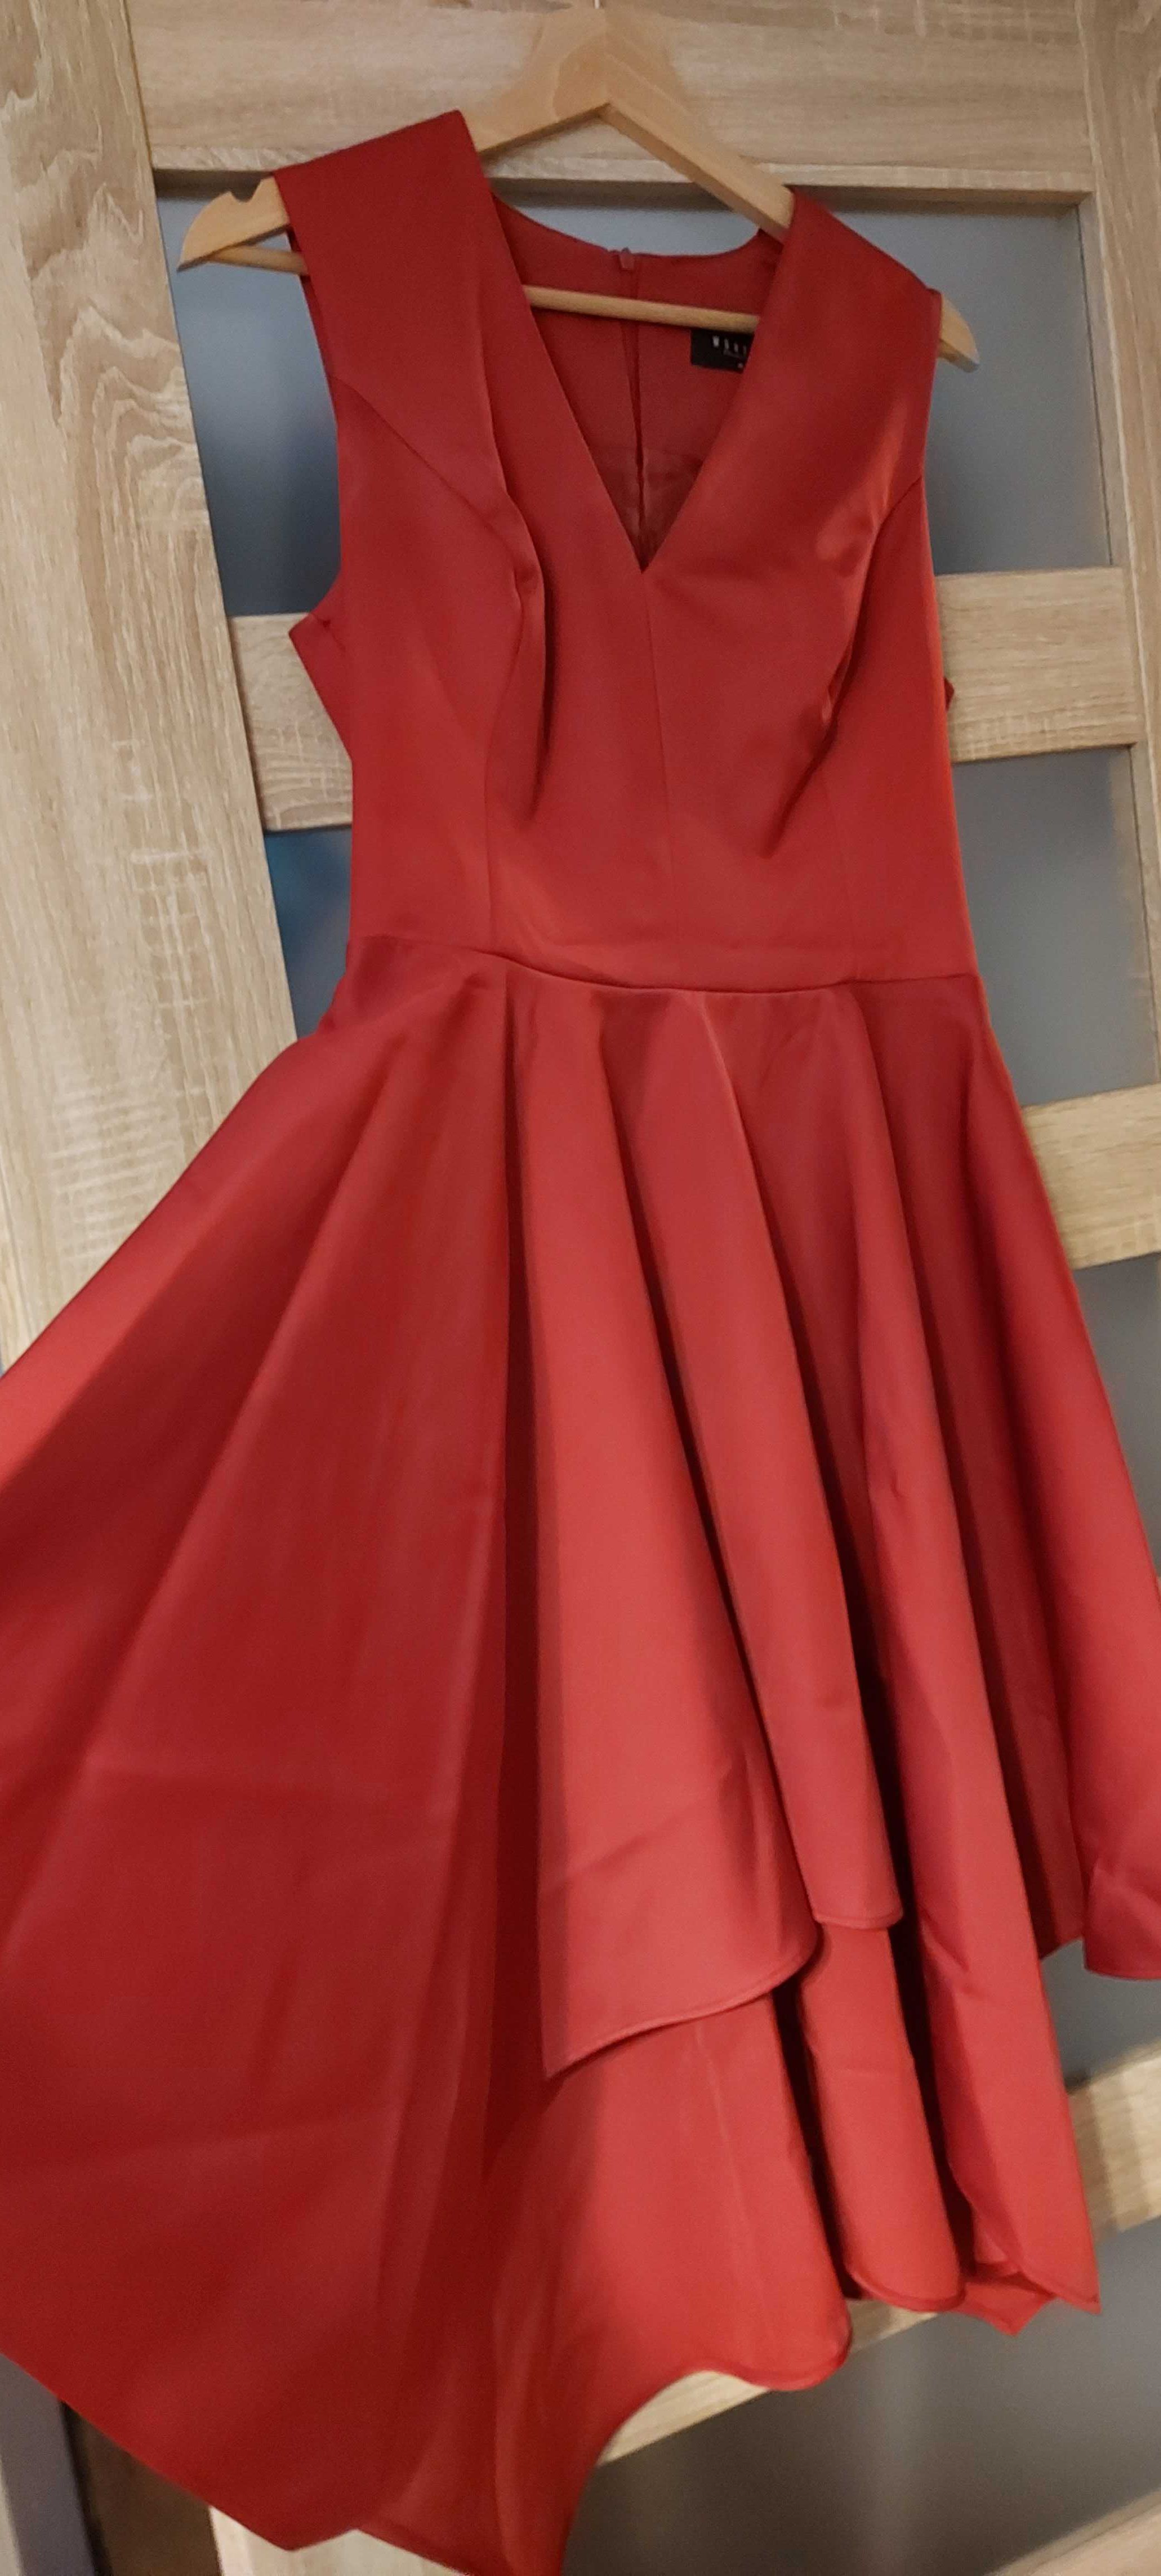 Przepiękna czerwona sukienka Mohito, rozmiar 40